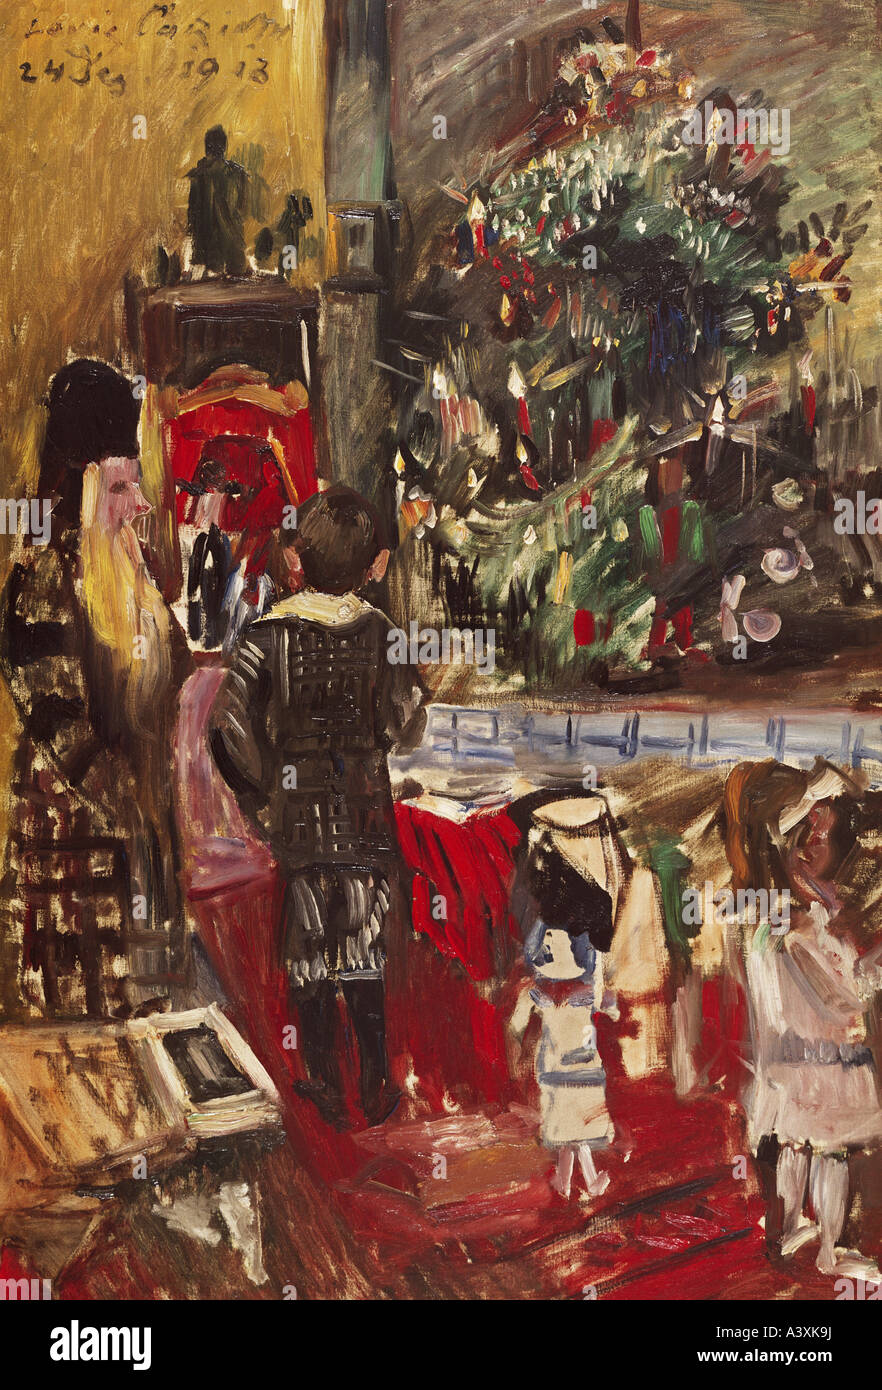 "Belle Arti, Corinto, Lovis, (1858 - 1925), pittura, 'Weihnachtsbaum' ('albero di natale"), 1913, olio su tela, 120 cm x 80, Foto Stock